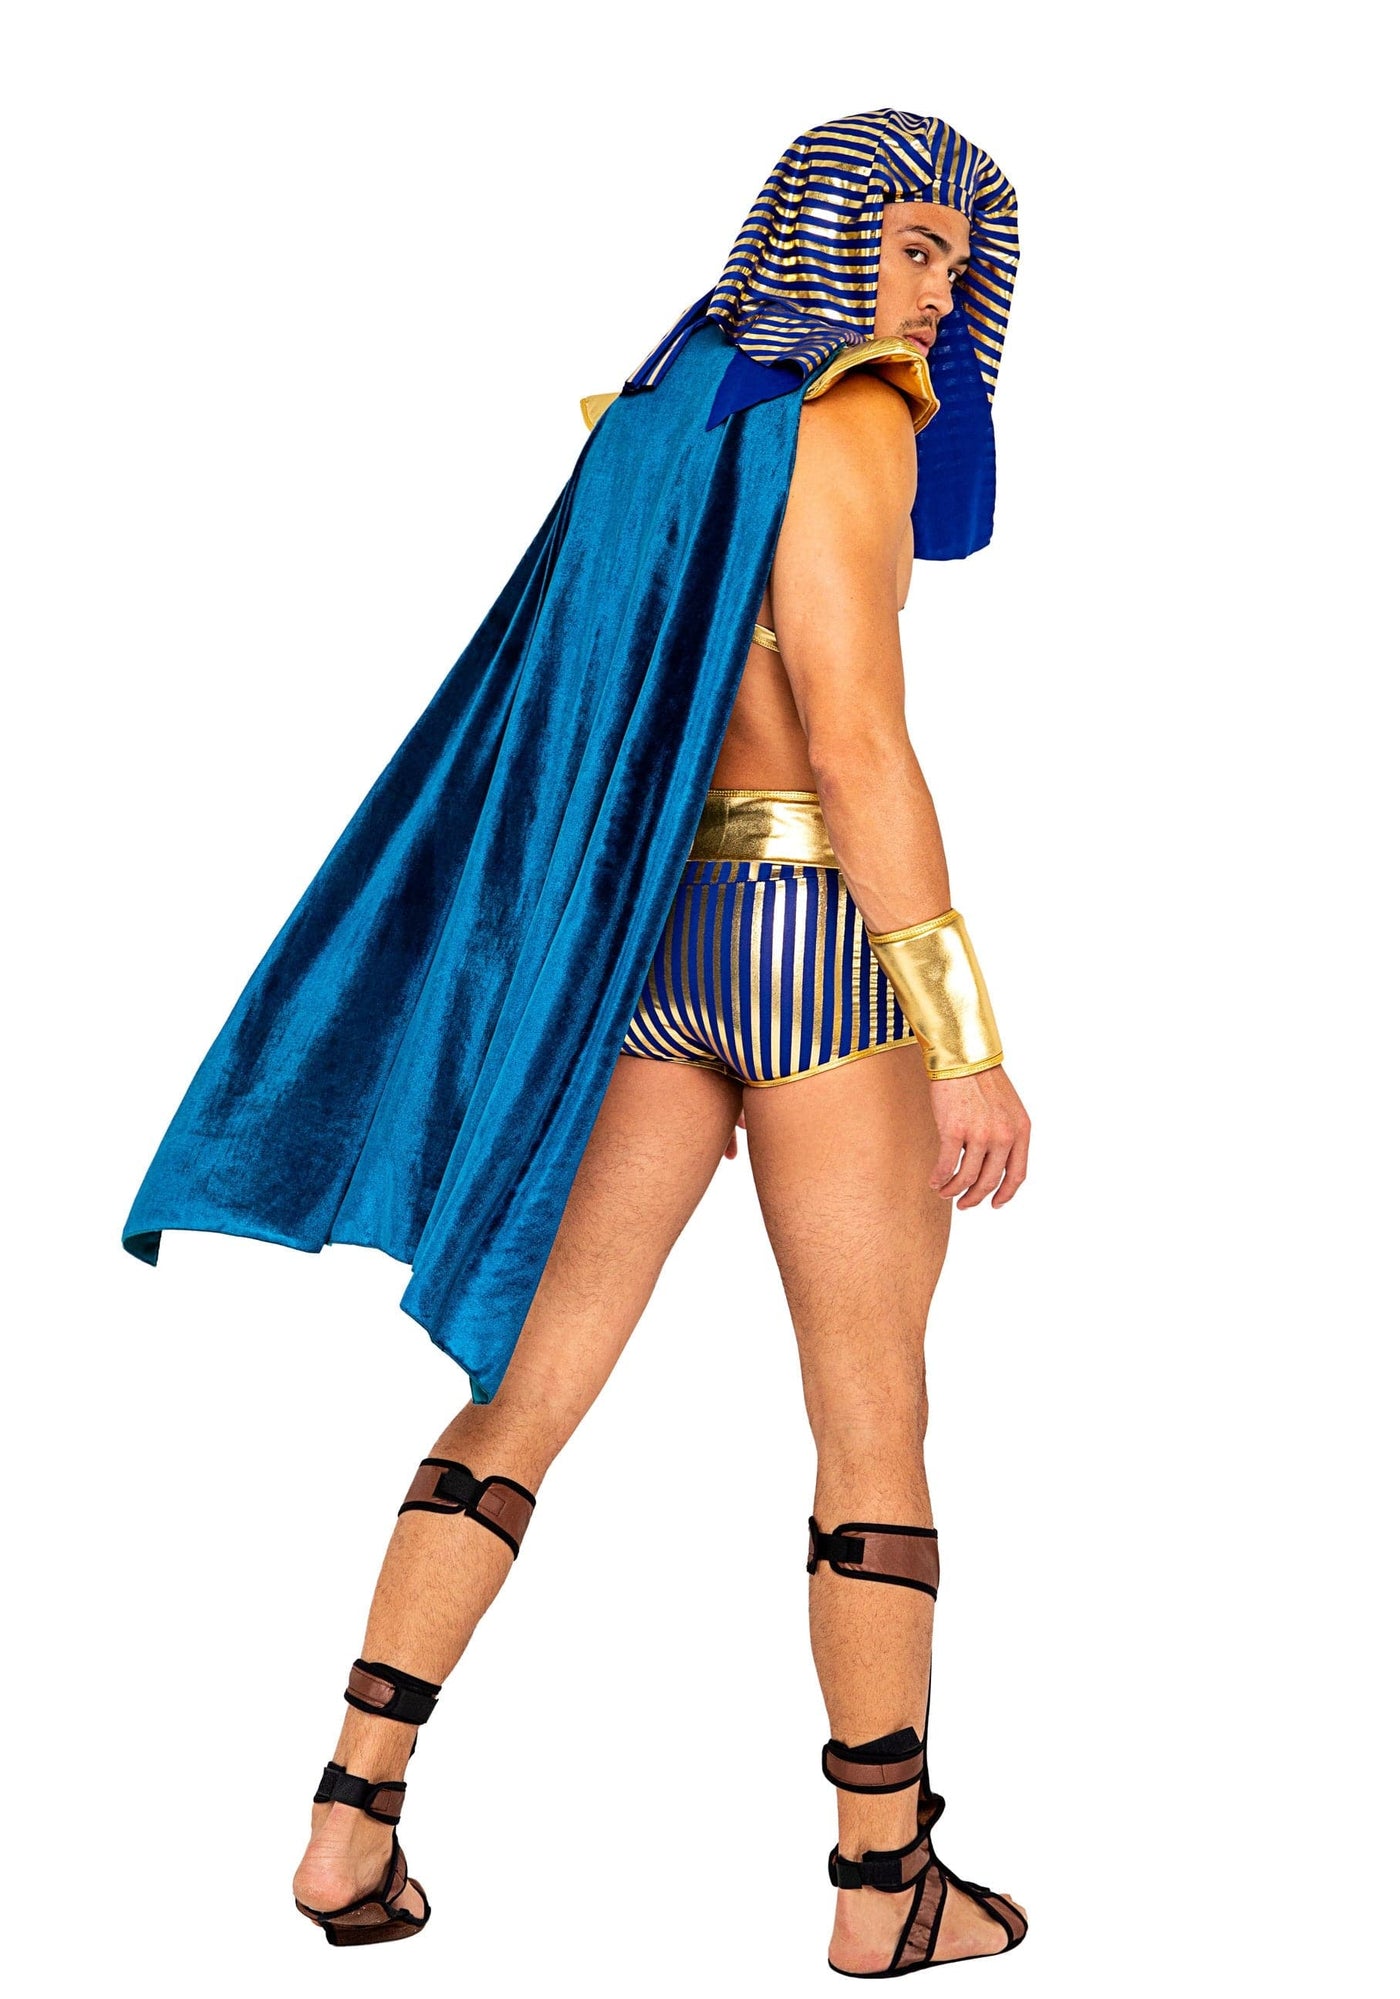 5pc. King Pharaoh of Egypt Men's Costume - For Love of Lingerie